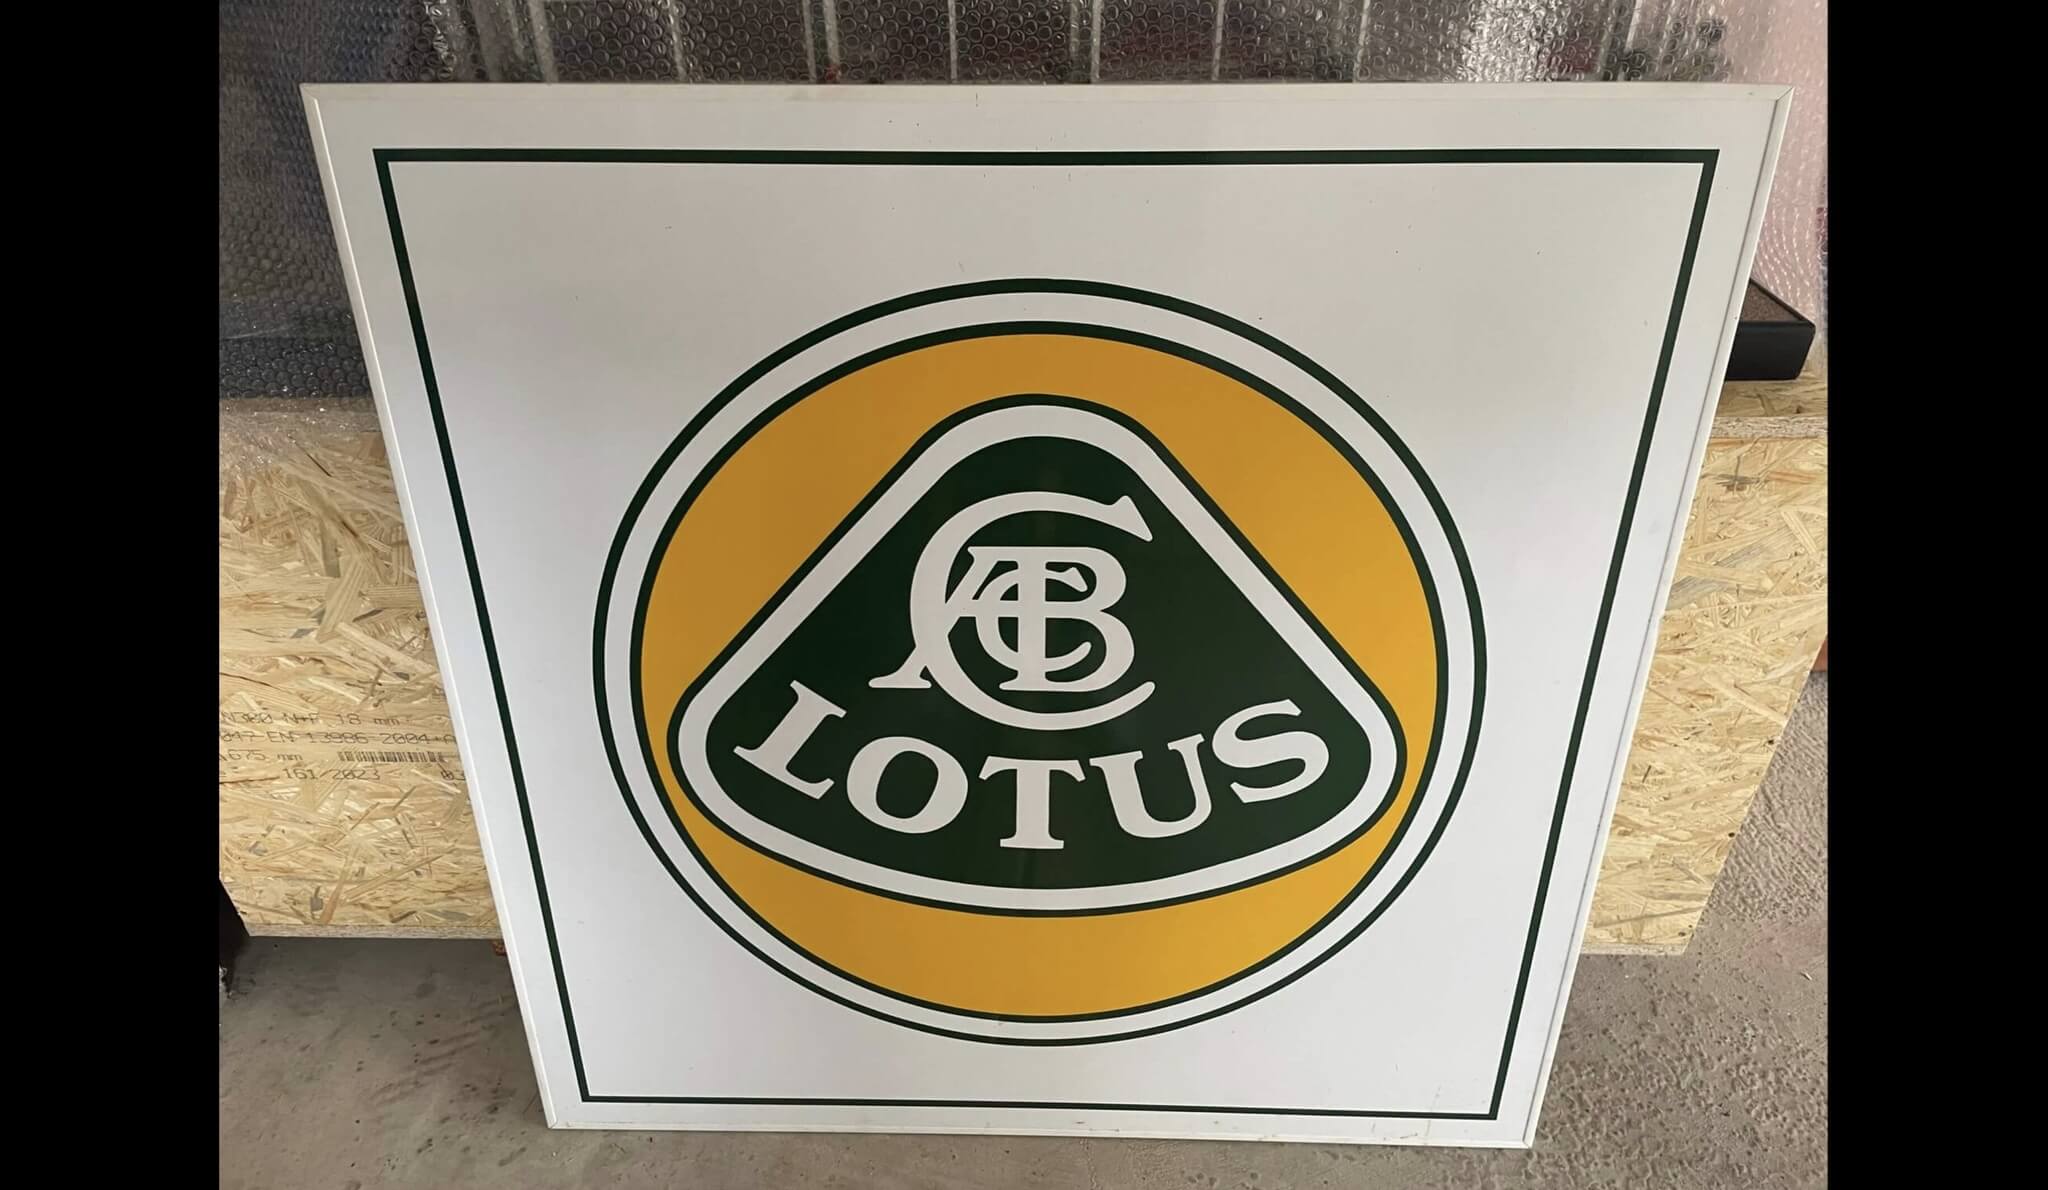 DT: 1980's Lotus Dealership Sign